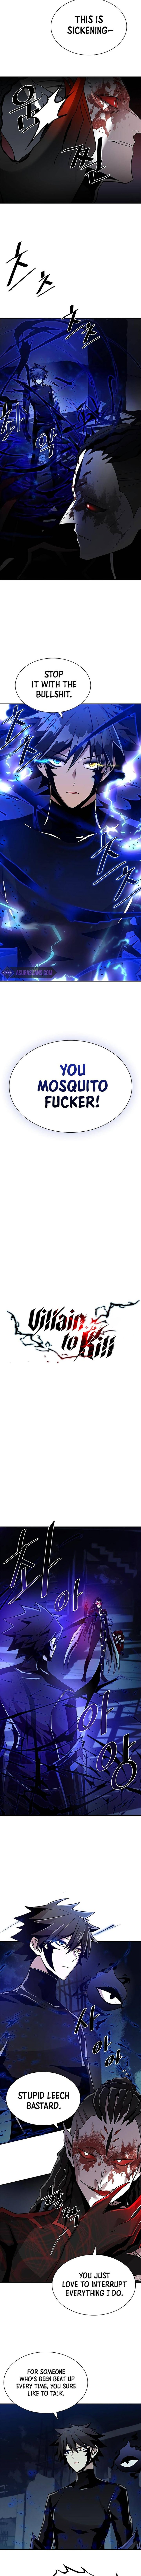 villain_to_kill_24_3